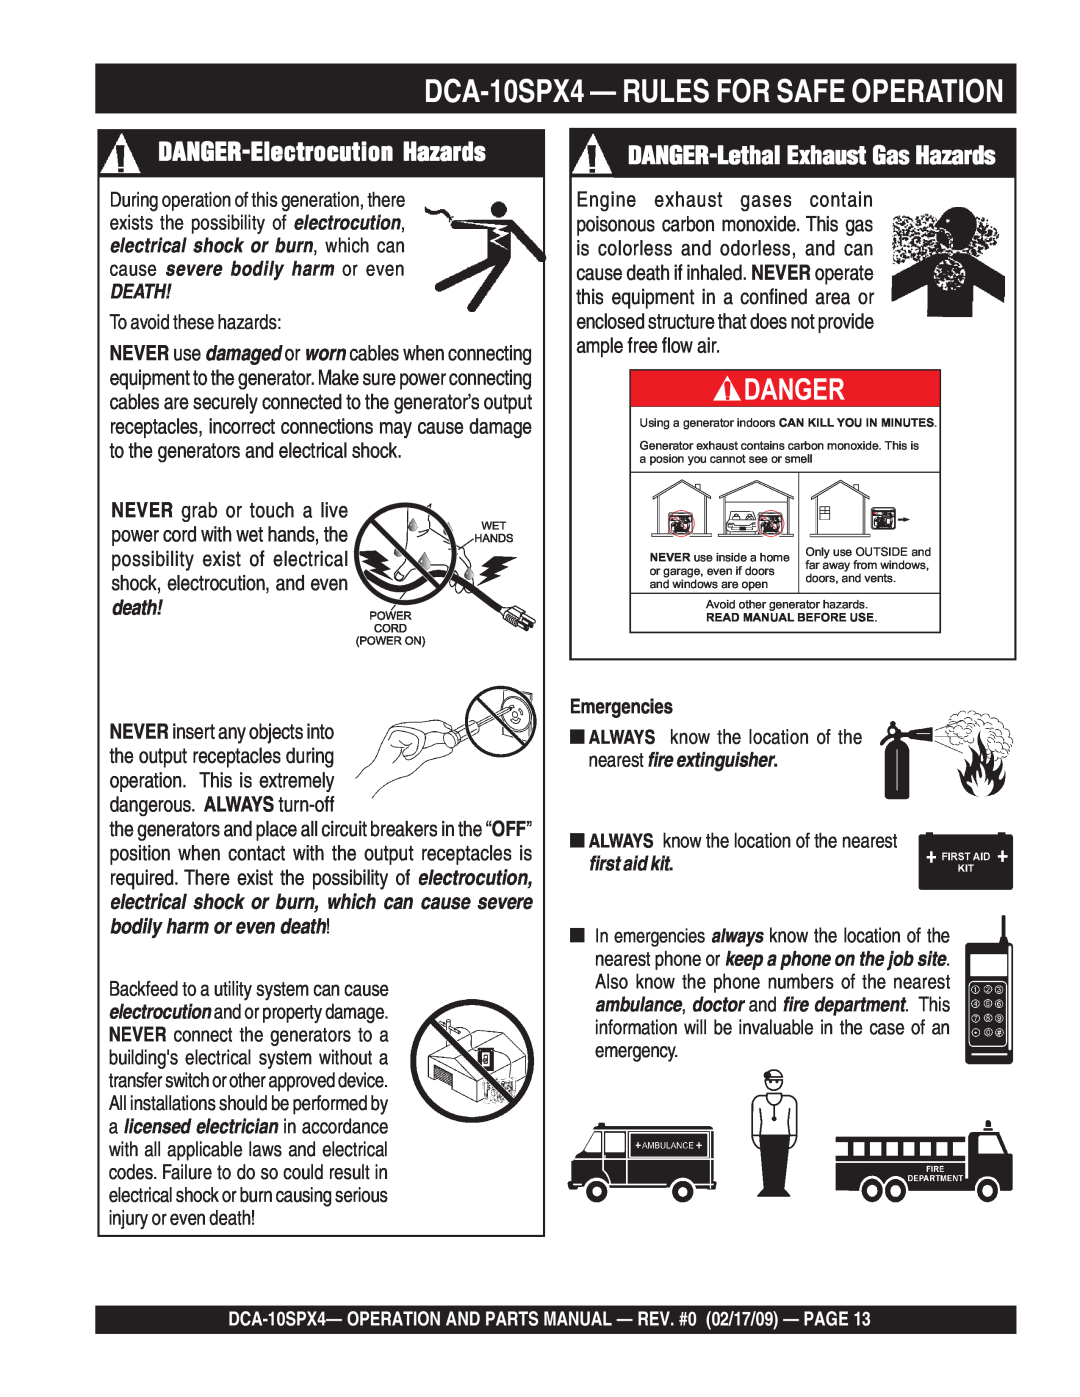 Multiquip DCA-10SPX4 DANGER-Electrocution Hazards, DANGER-Lethal Exhaust Gas Hazards, Danger, Death, Emergencies 